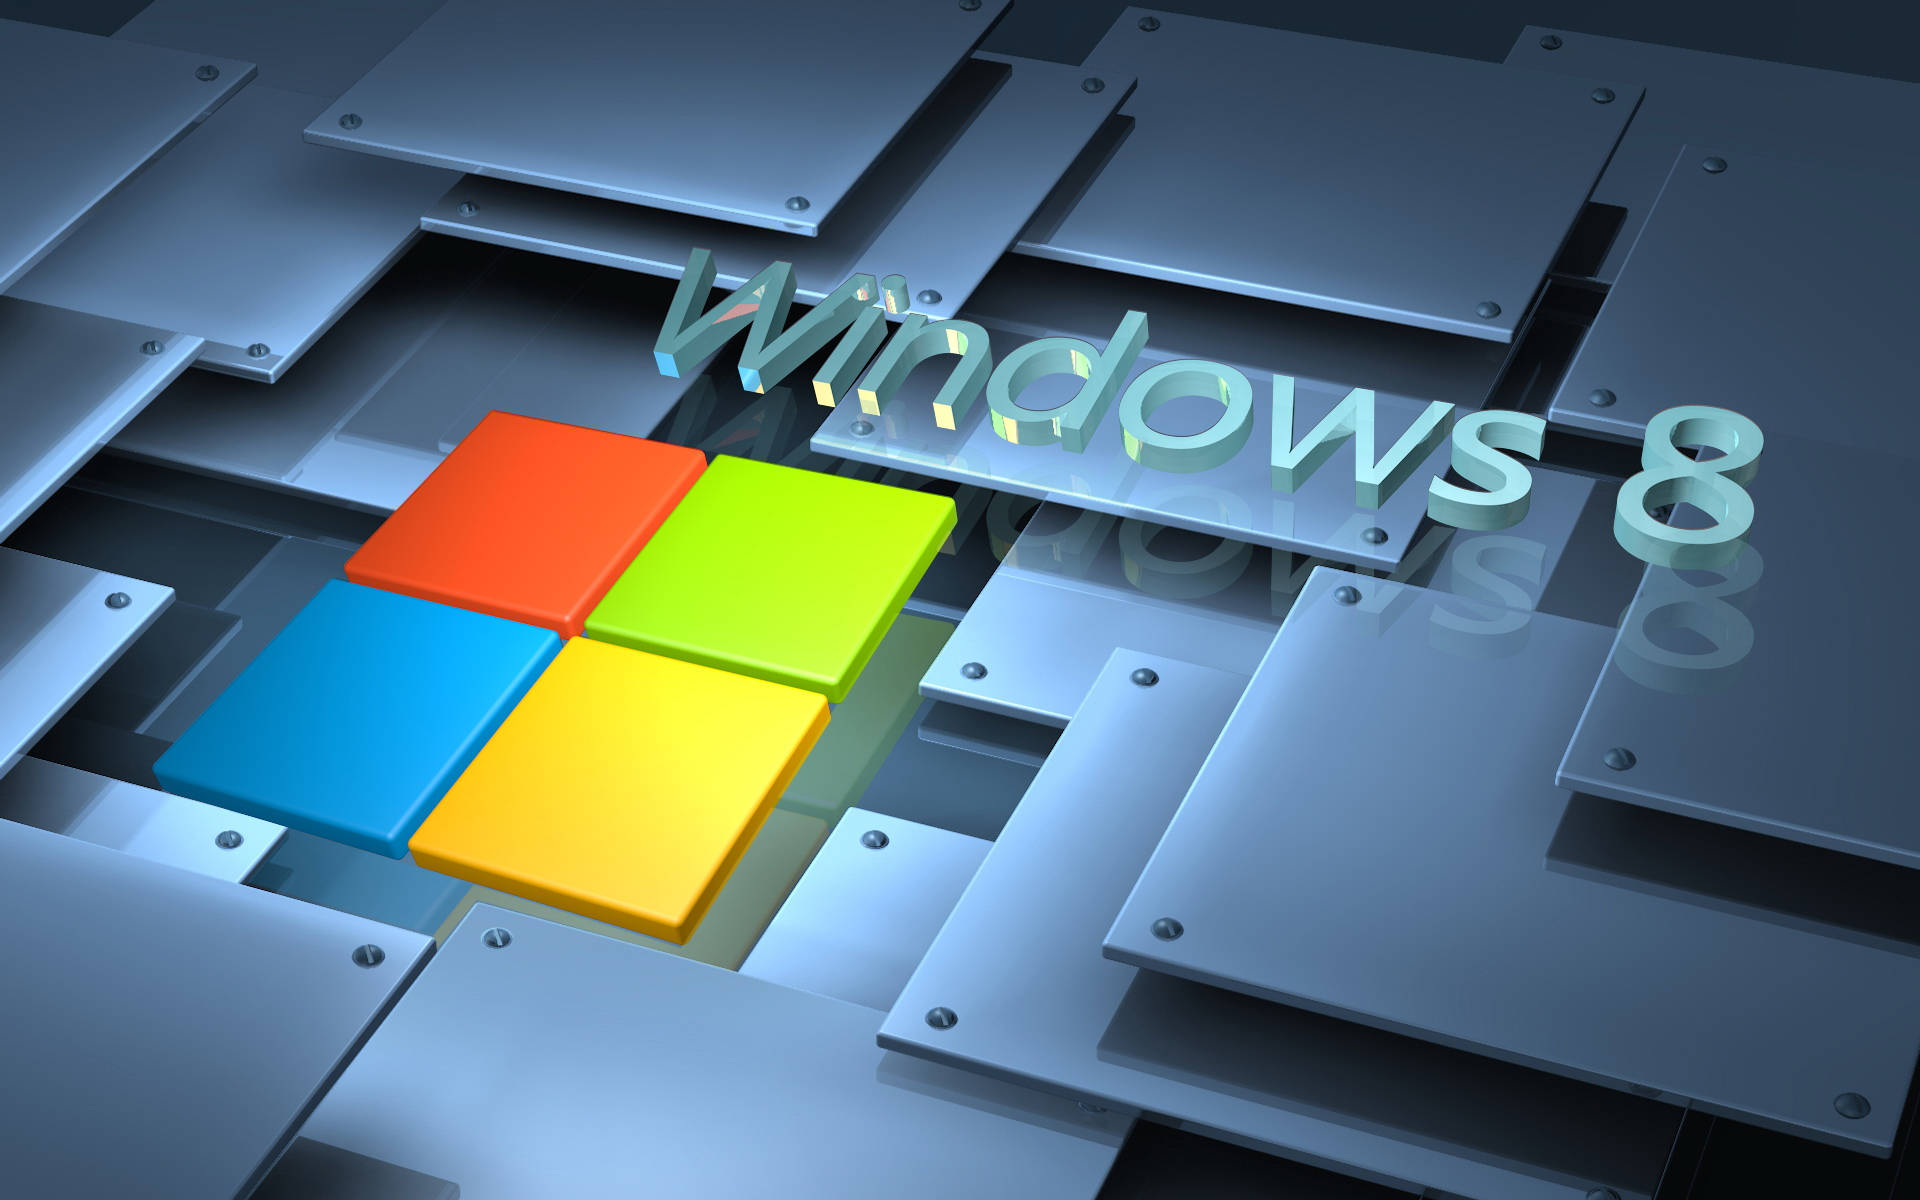 Windows8 Hintergrund Mit Stahlfliesten. Wallpaper